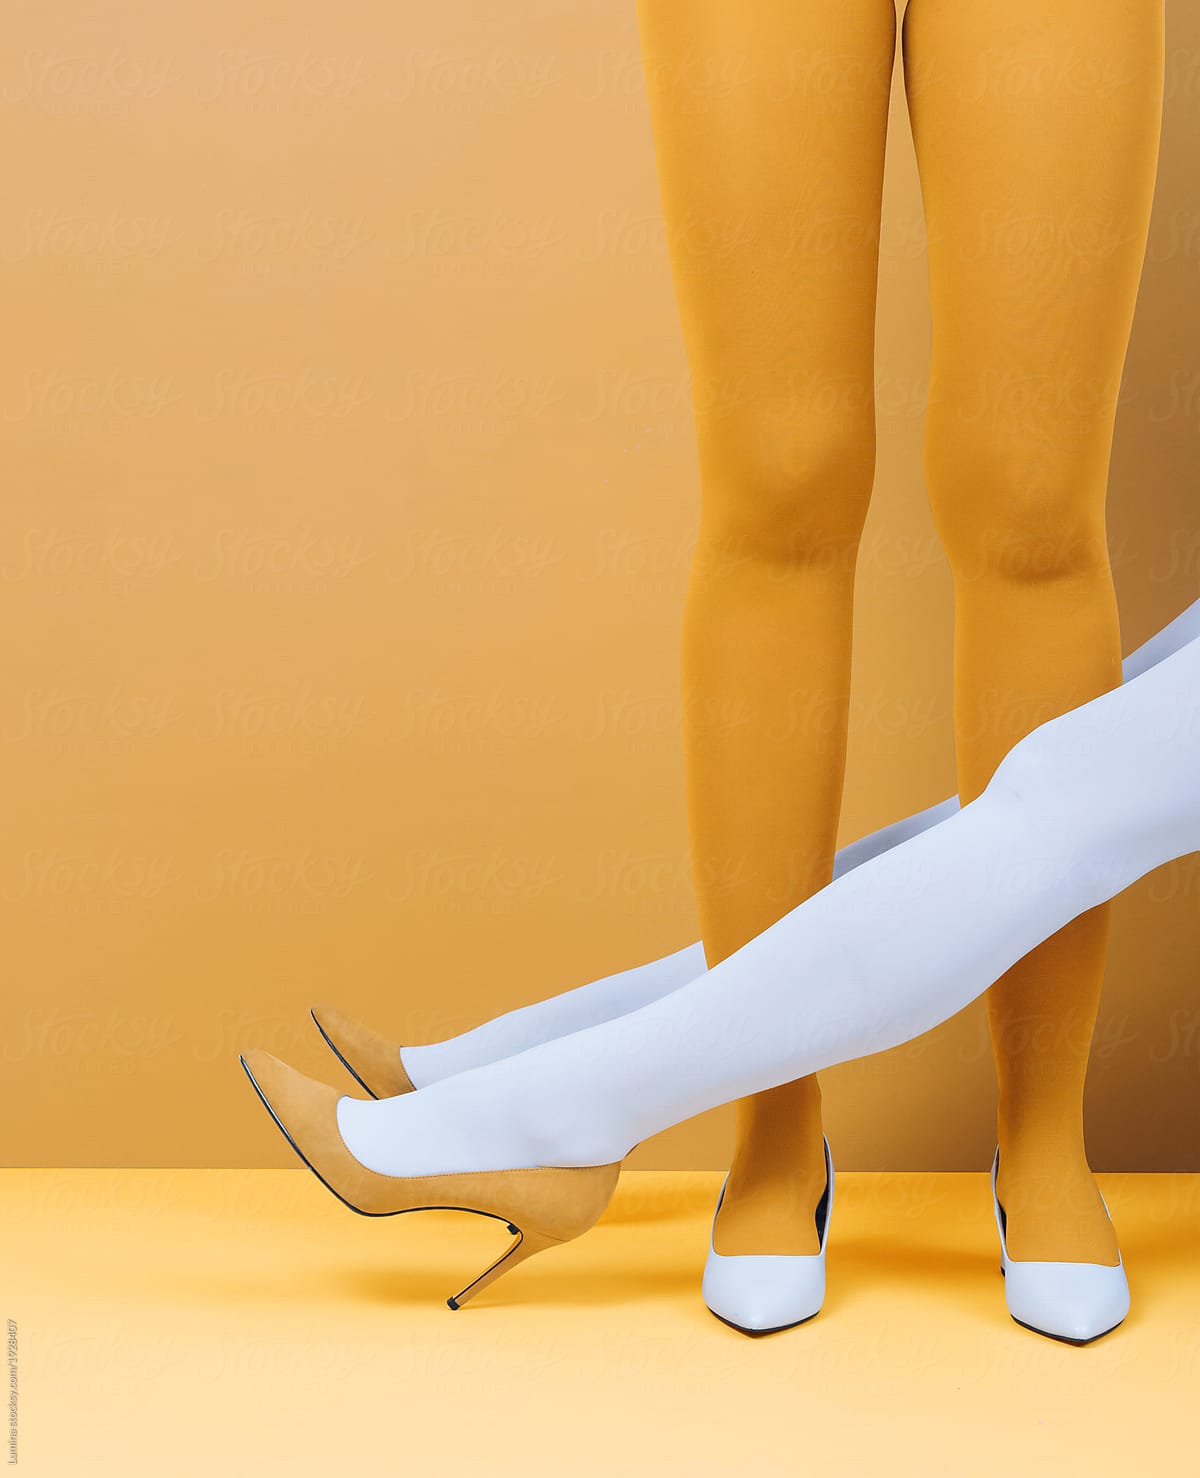 Women's Legs in Stiletto